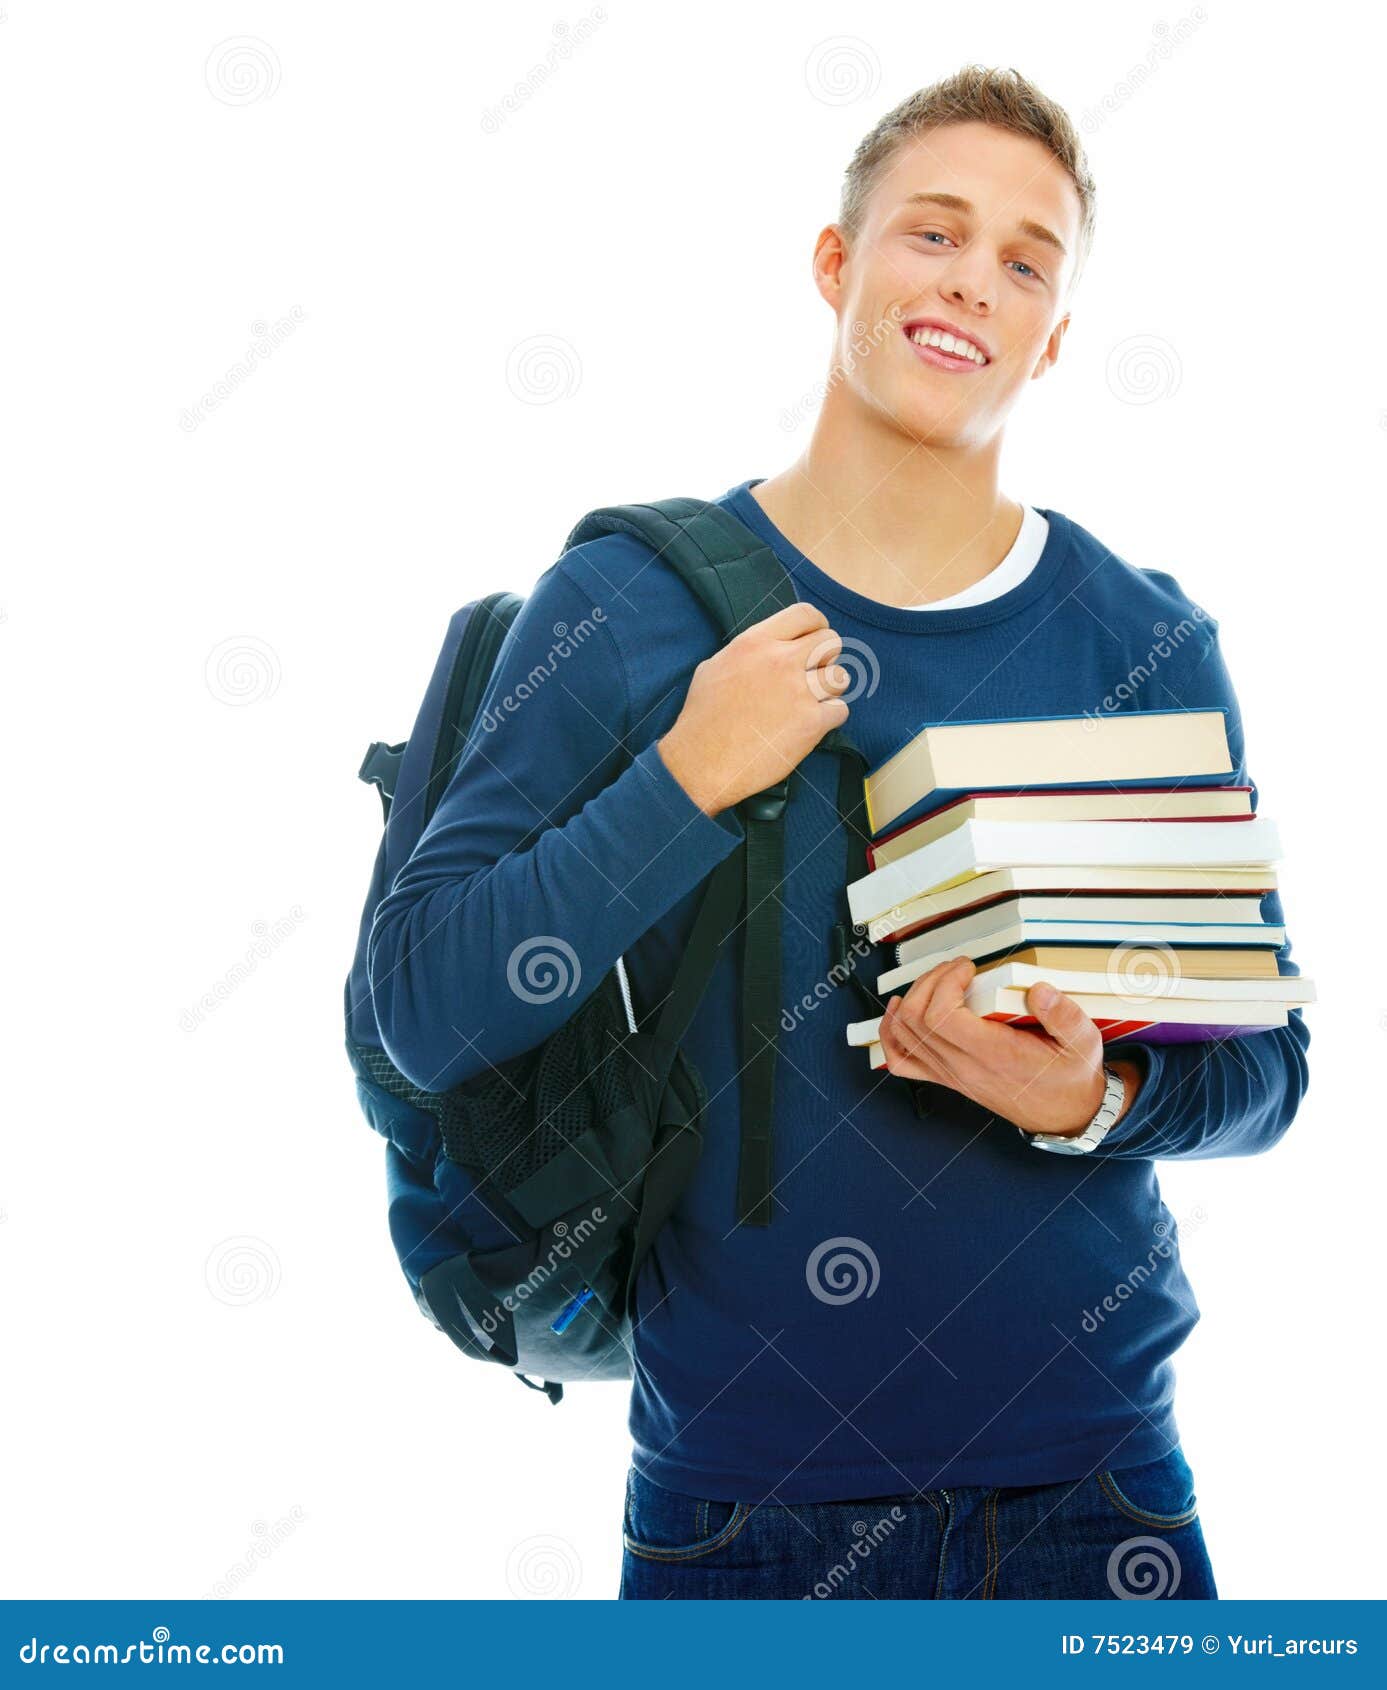 Студентам дадут деньги. Книга человек. Человек студент. Парень студент. Студенты с книгами на белом фоне.